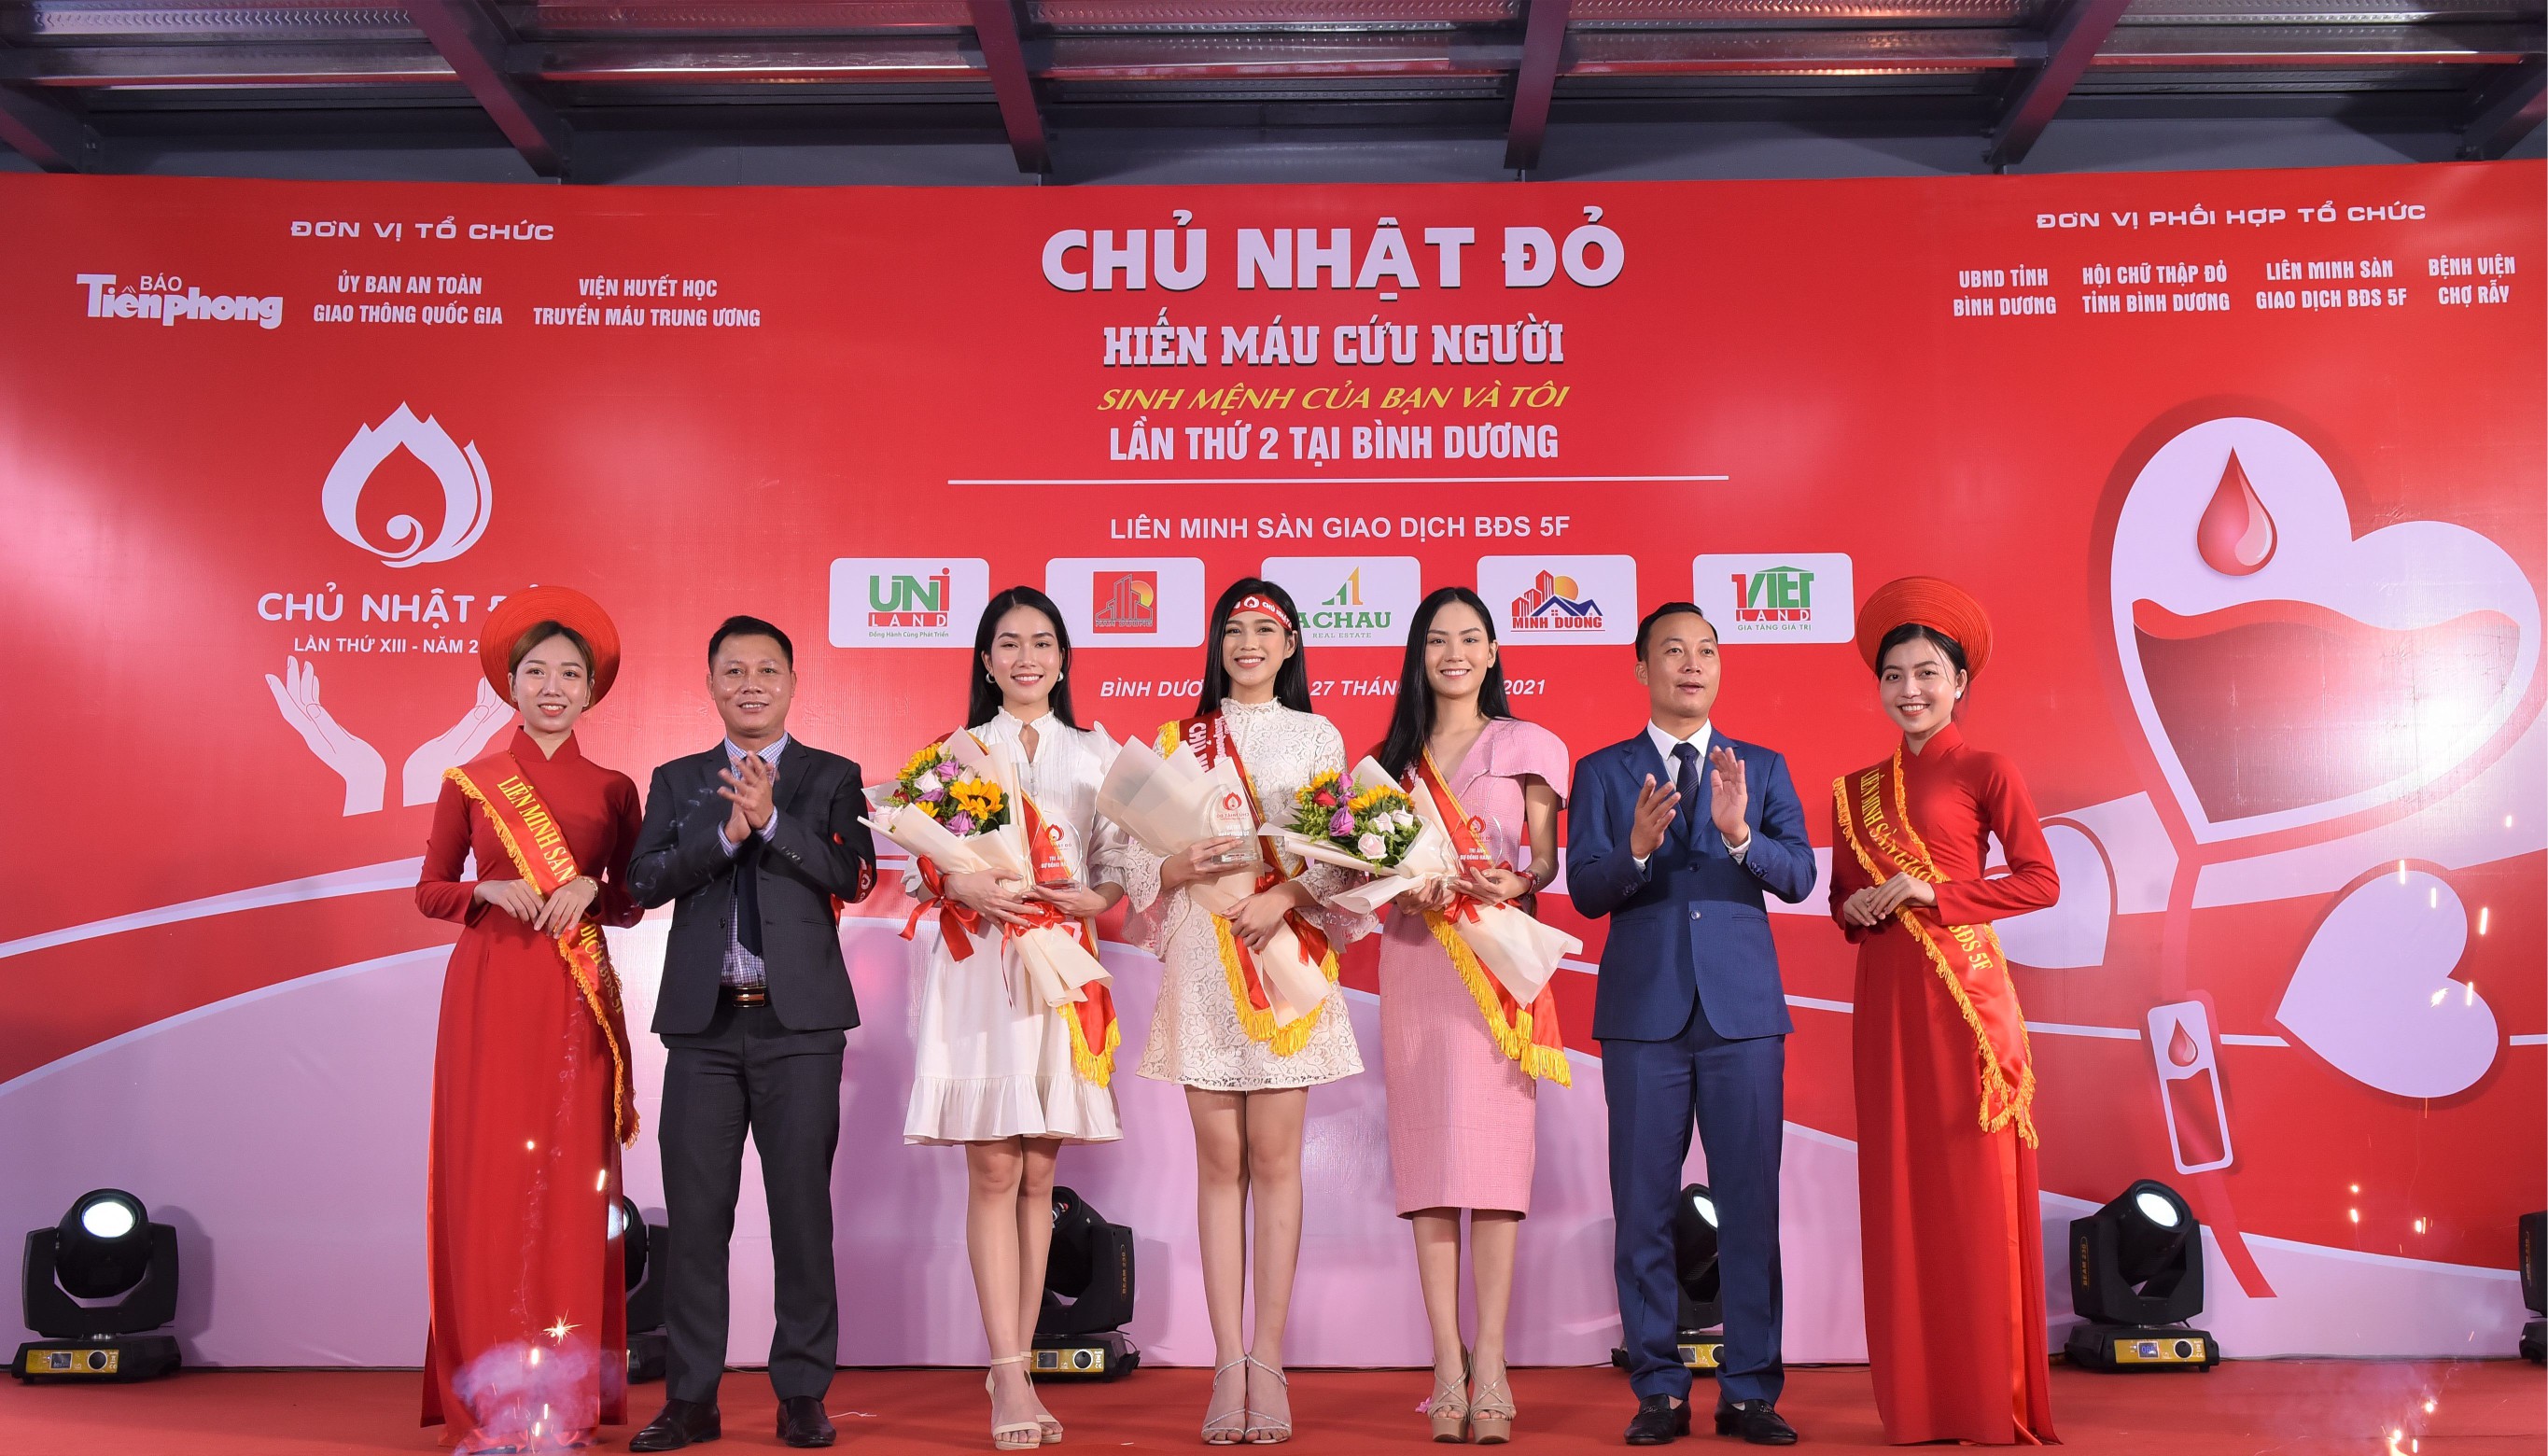 Ông Nguyễn Hữu Tạo (thứ 2 từ trái sang), Tổng giám đốc Địa ốc Á Châu, chụp hình lưu niệm với đại diện Liên minh 5F và các khách mời trng chương trình Chủ nhật đỏ lần thứ 13.